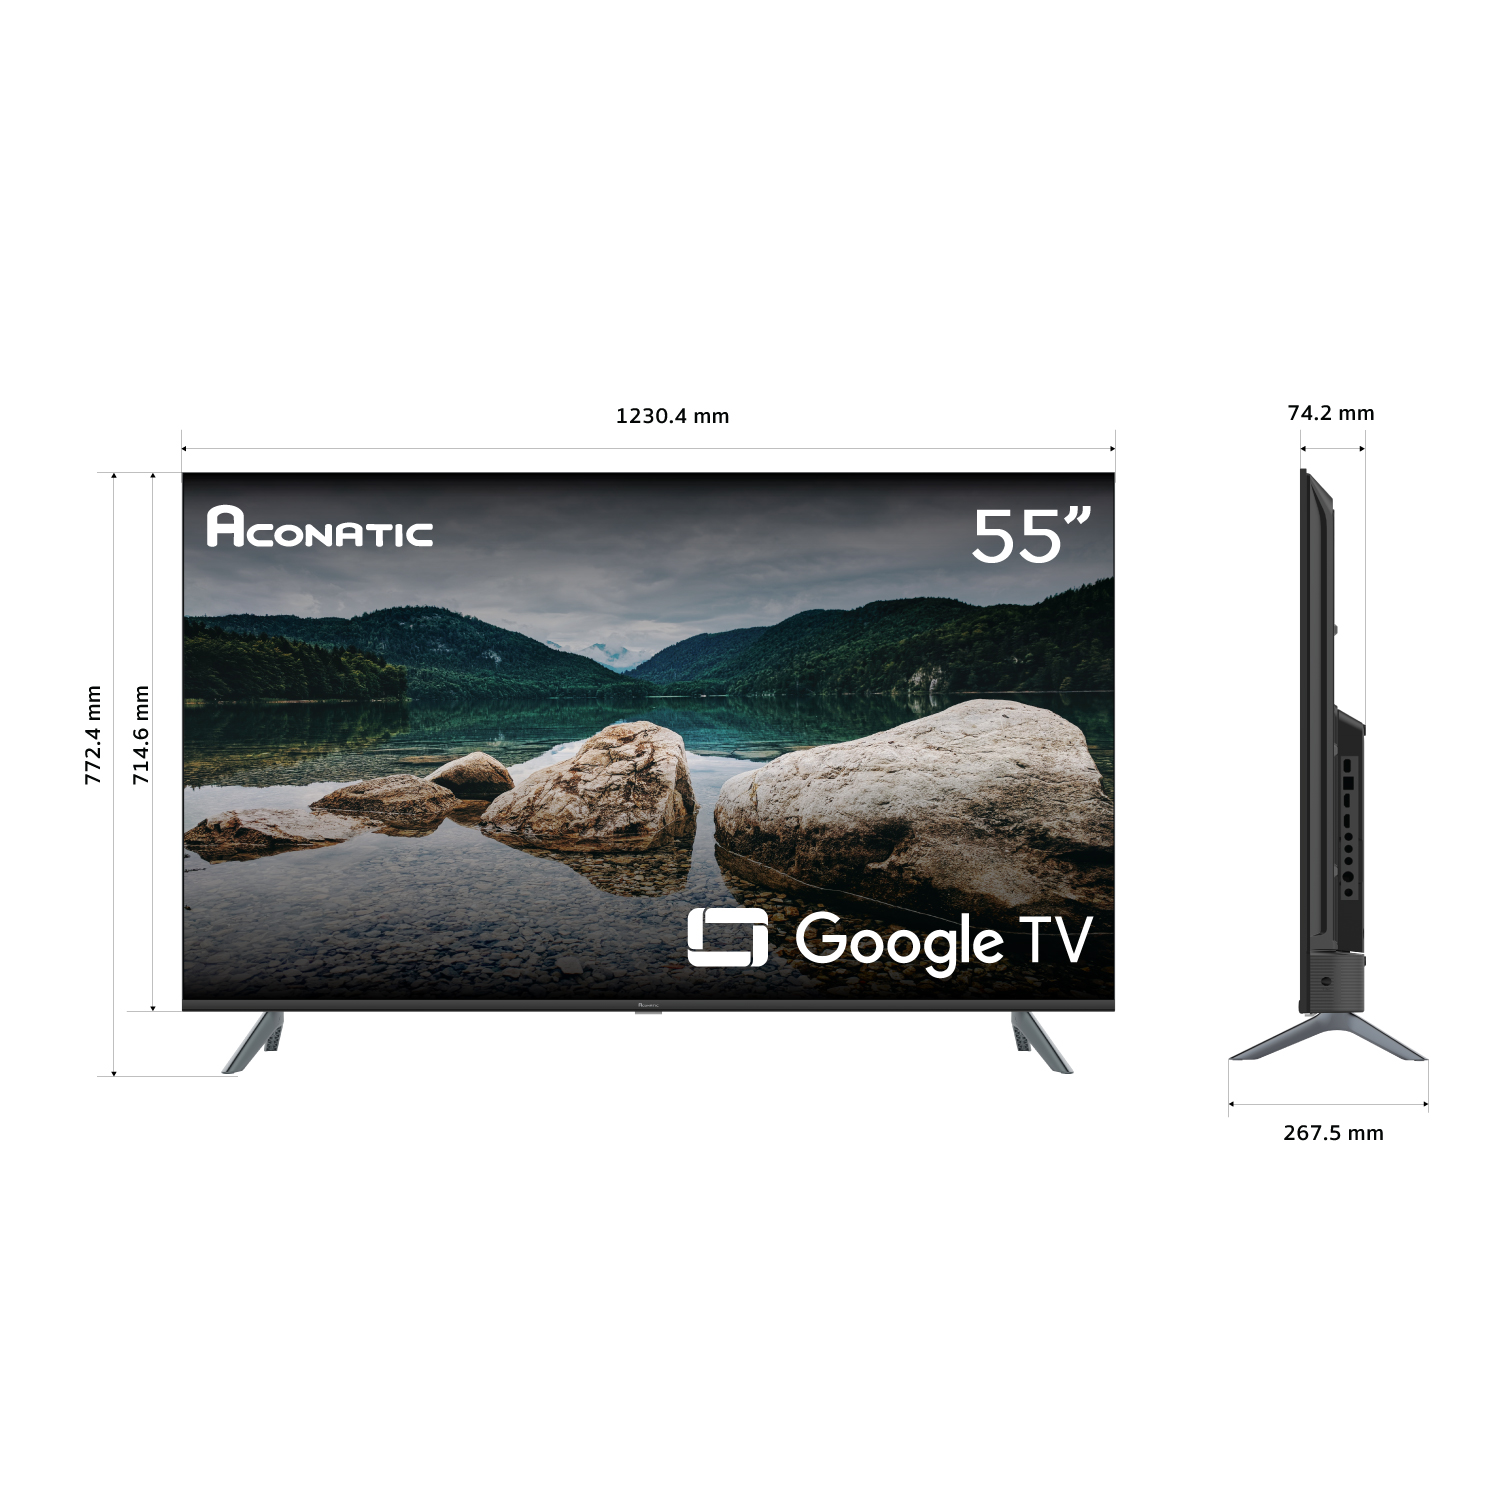 Google TV 55 model 55US700AN